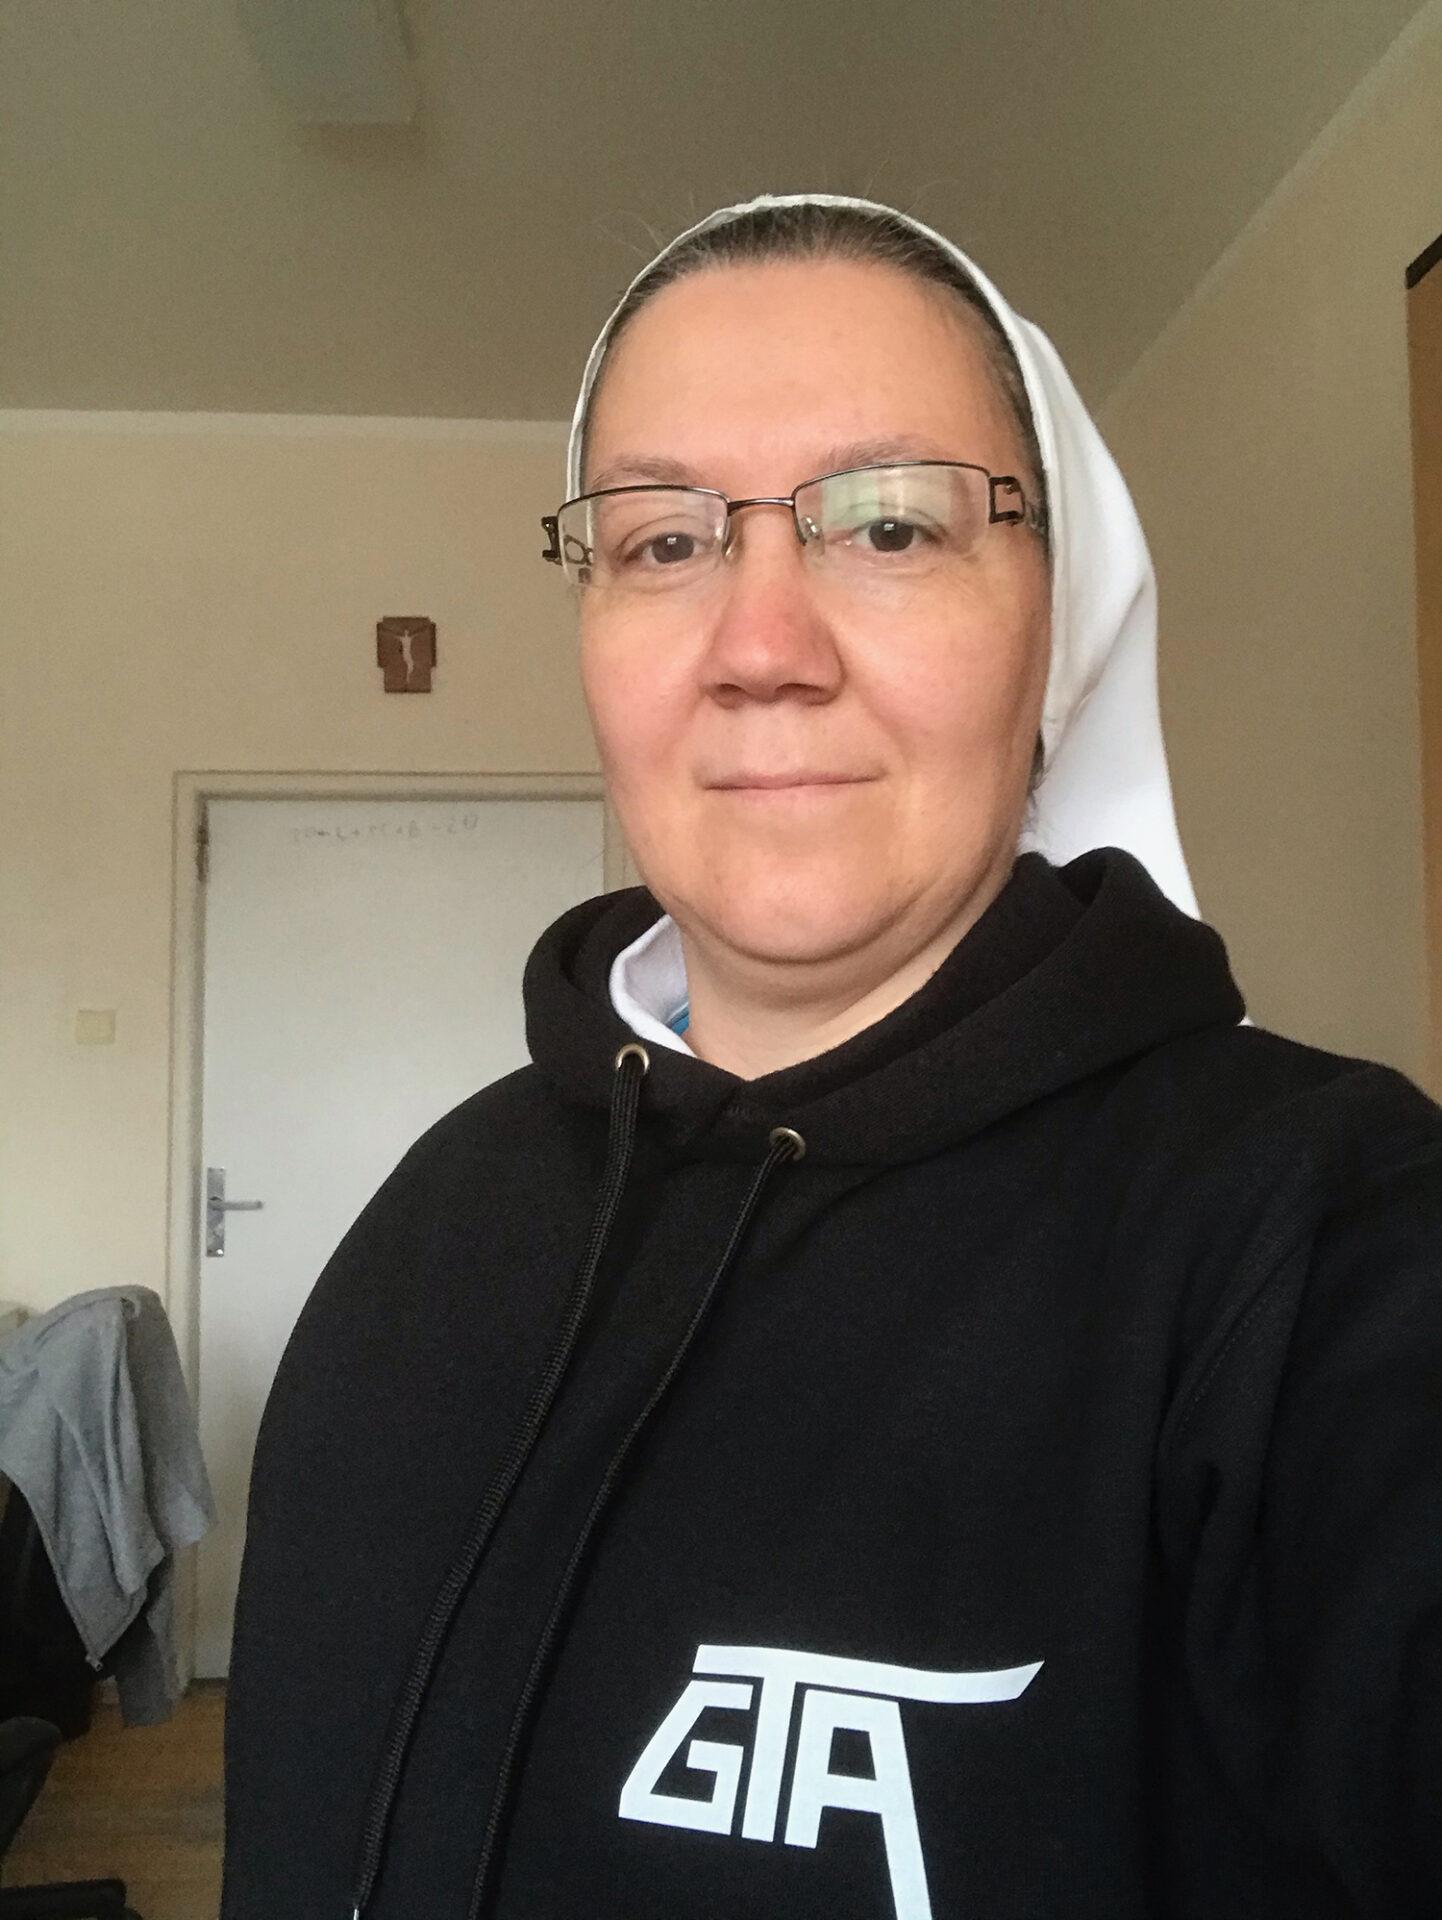 Sestra Hermana: Nebojme sa byť ženami, ktoré vedia, čo chcú a vedia to dosiahnuť